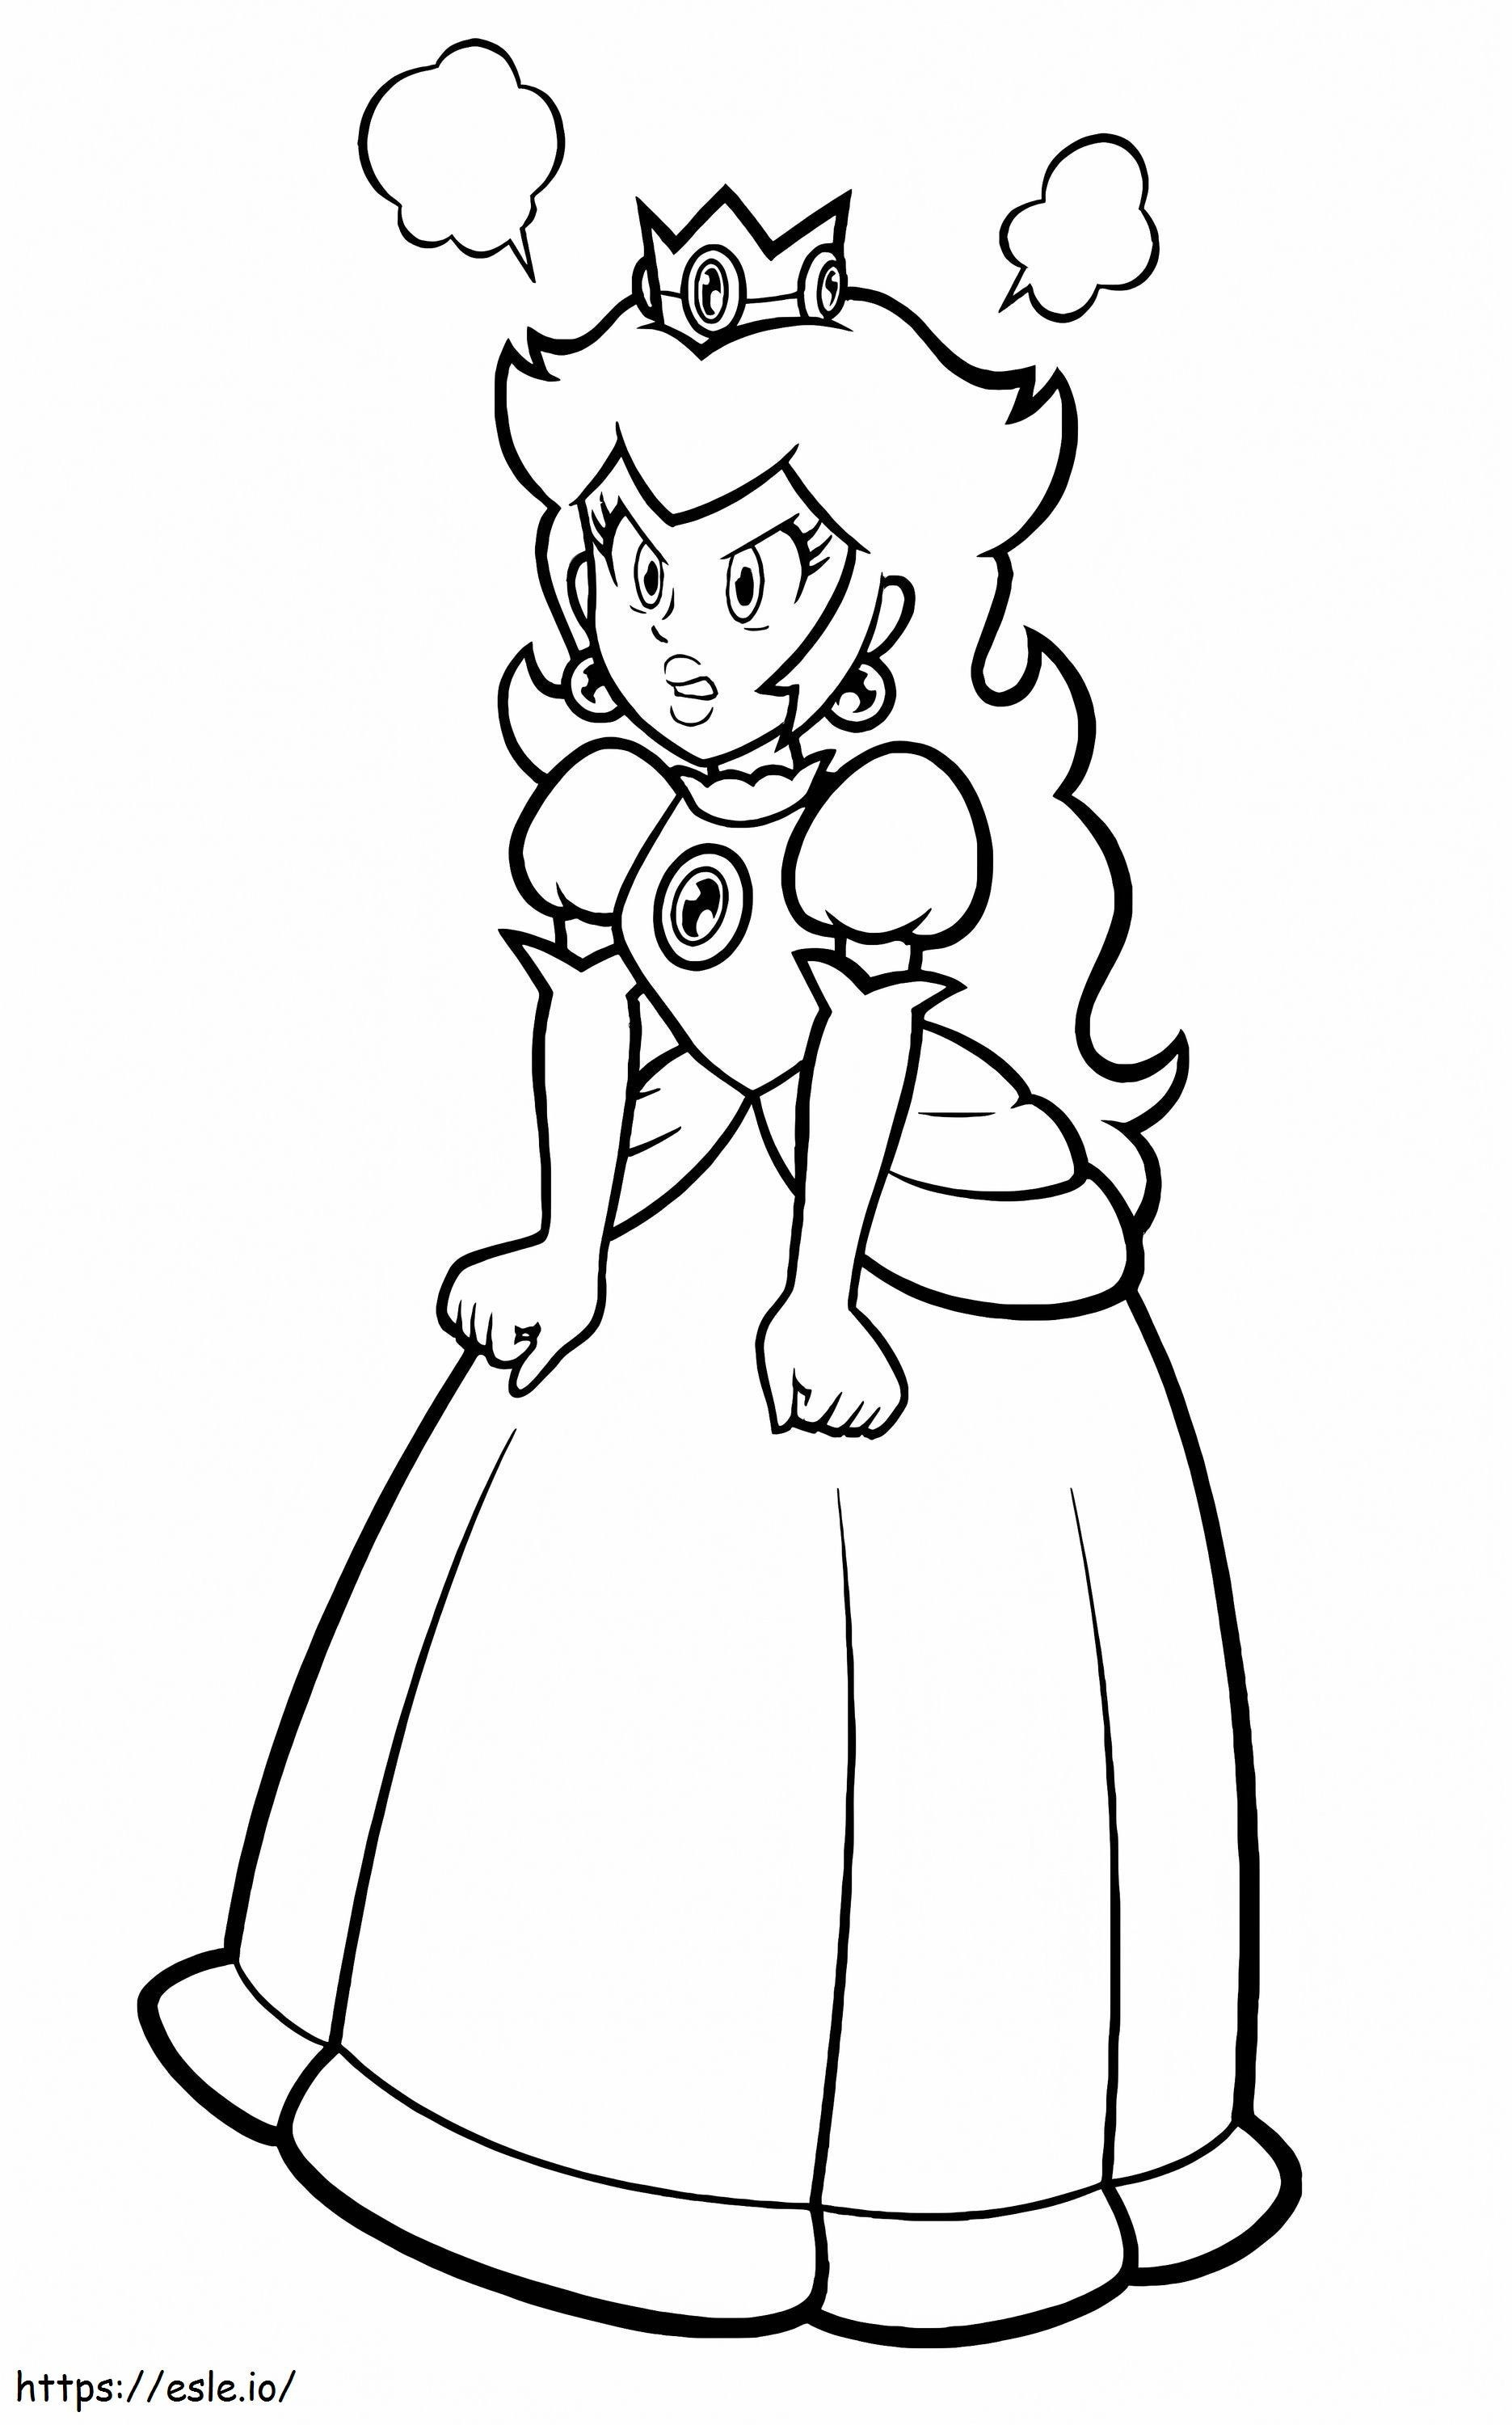 La principessa Peach arrabbiata da colorare